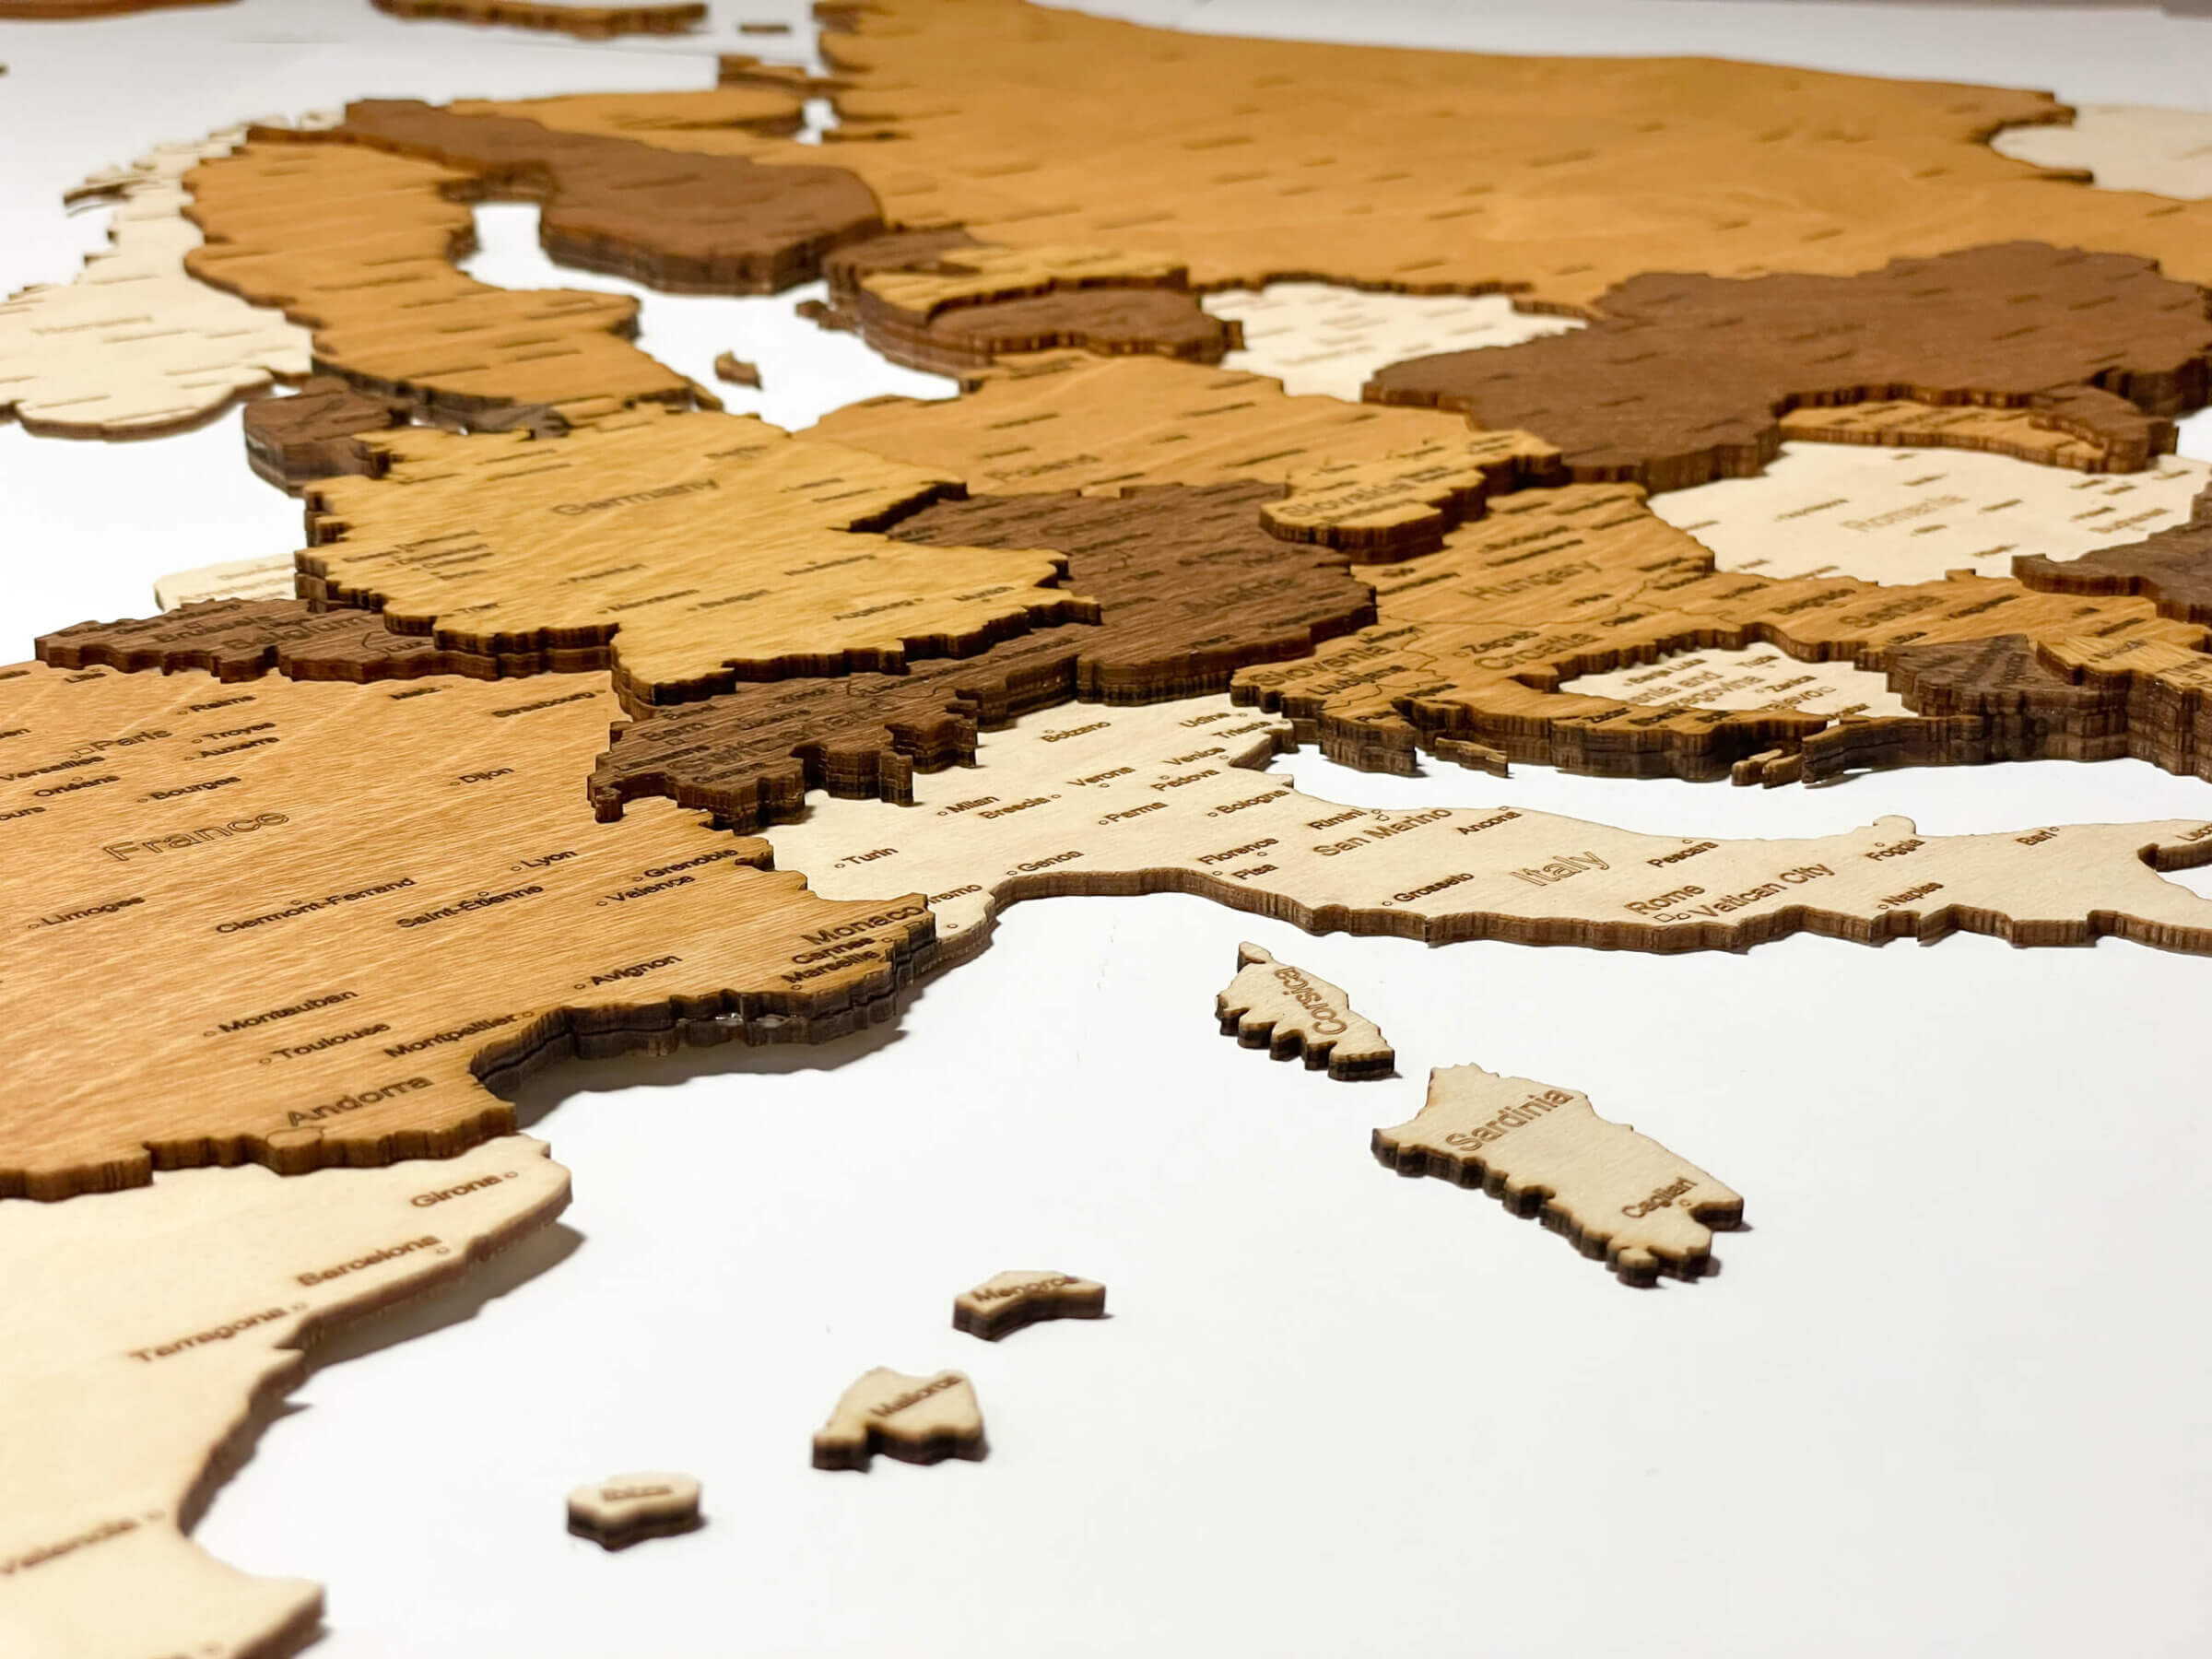 Středozemní moře - 3D dřevěná mapa Evropy